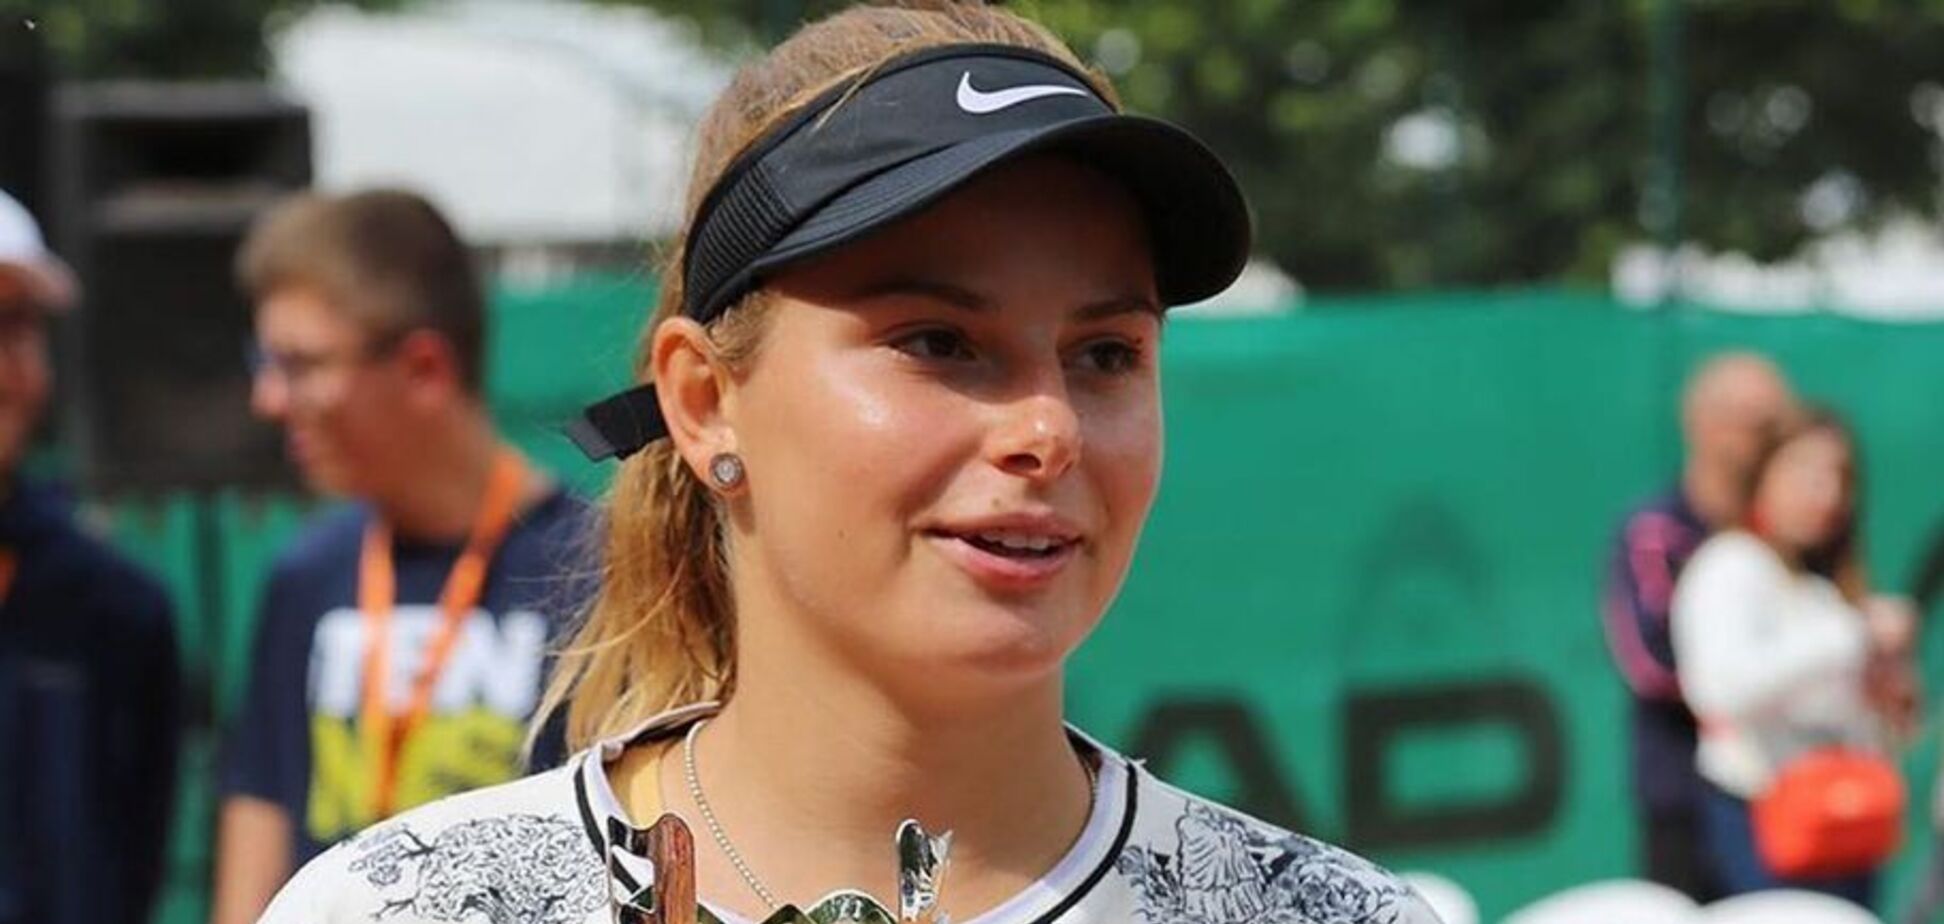 Украинская теннисистка выиграла крупный турнир и взлетела в рейтинге